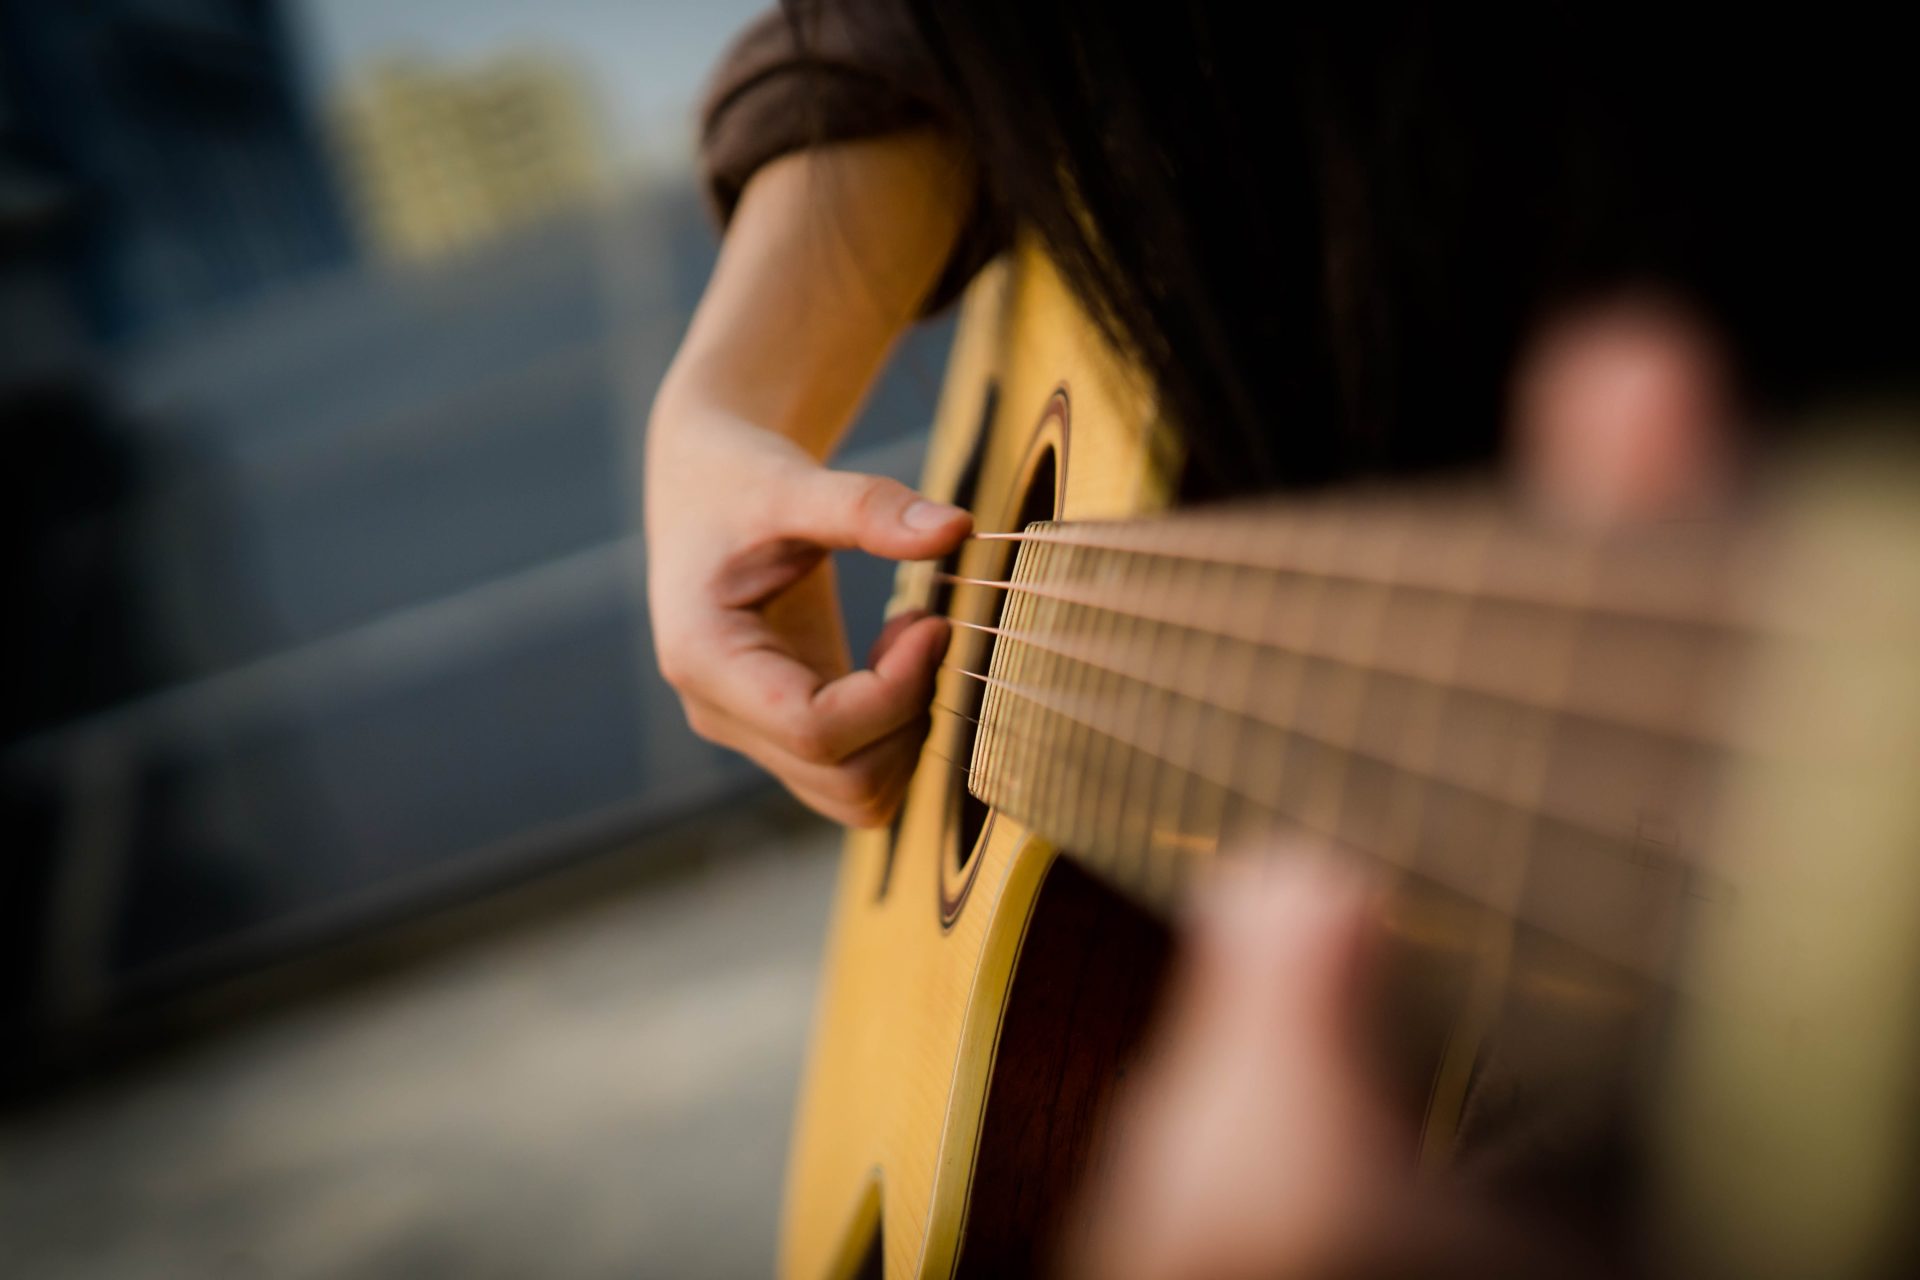 Cách Tạo Dáng Chụp Ảnh Với Đàn Guitar Cực Nghệ Cho Cô Nàng Tuổi Đôi Mươi